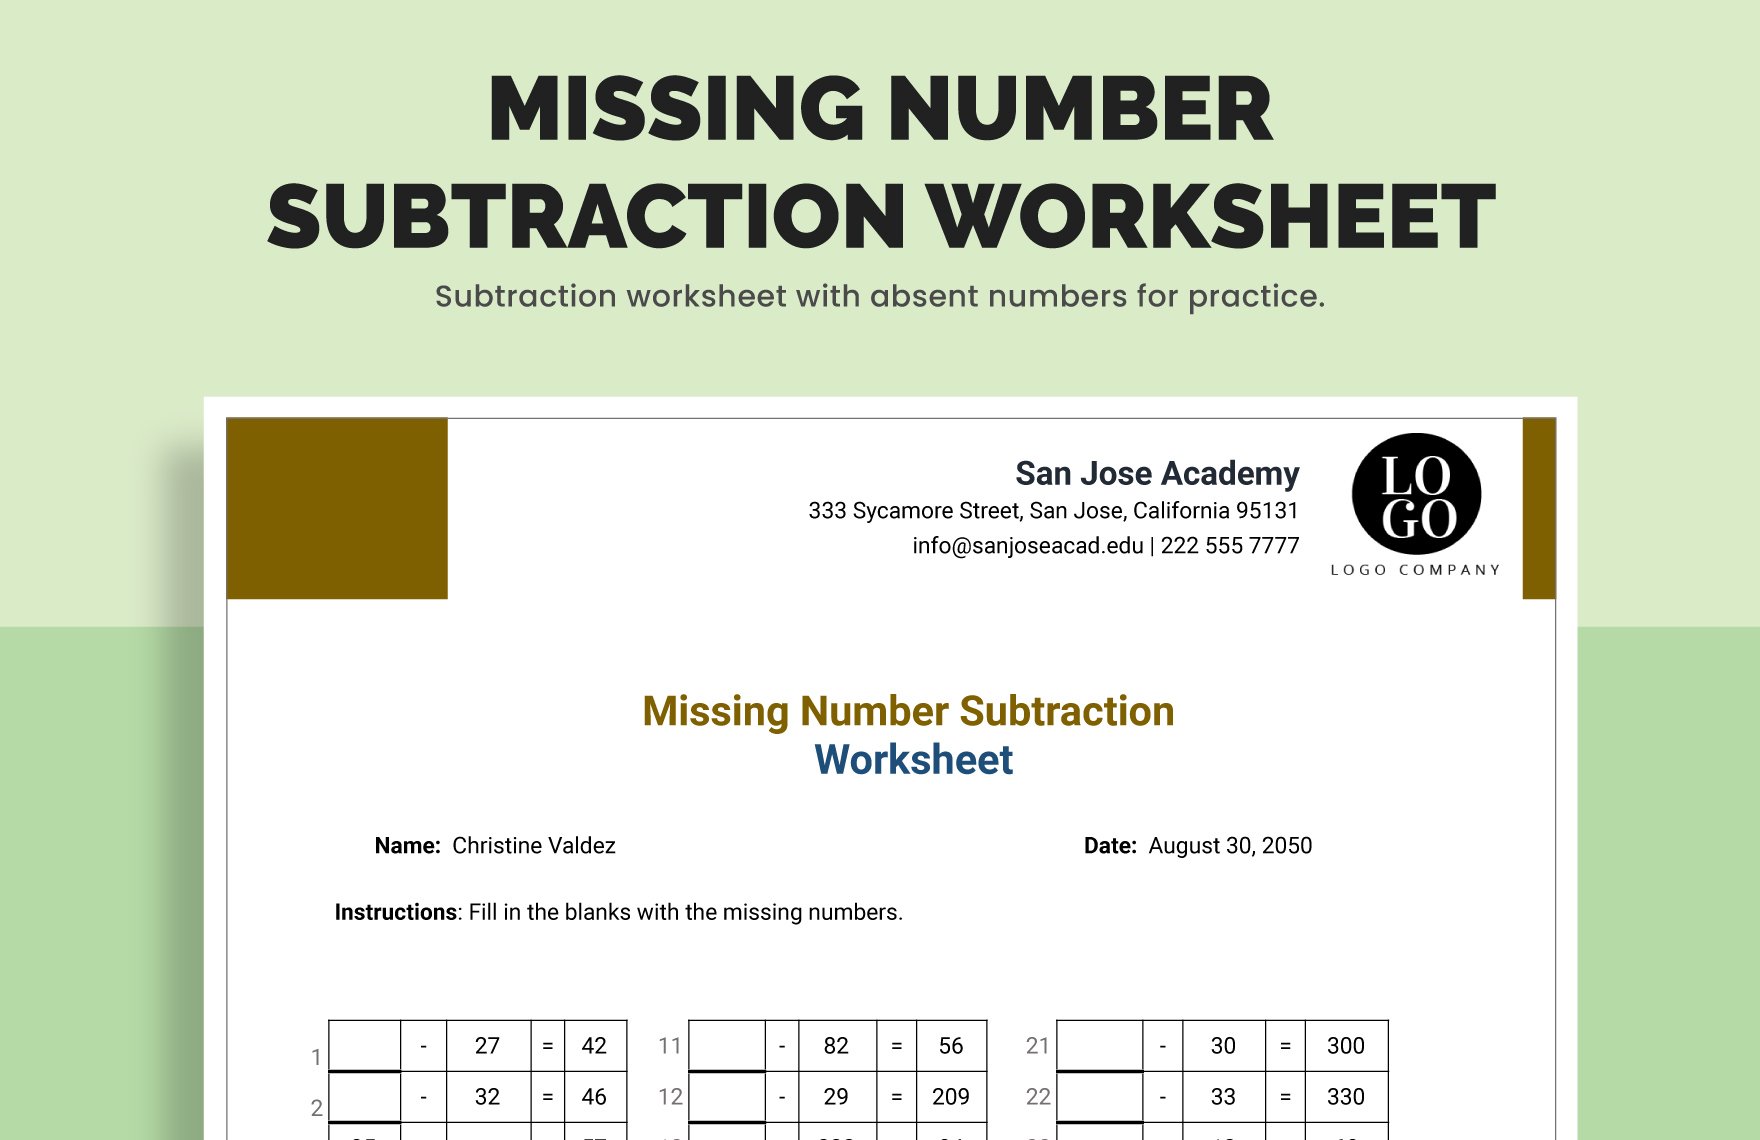 Missing Number Subtraction Worksheet in Excel, Google Sheets